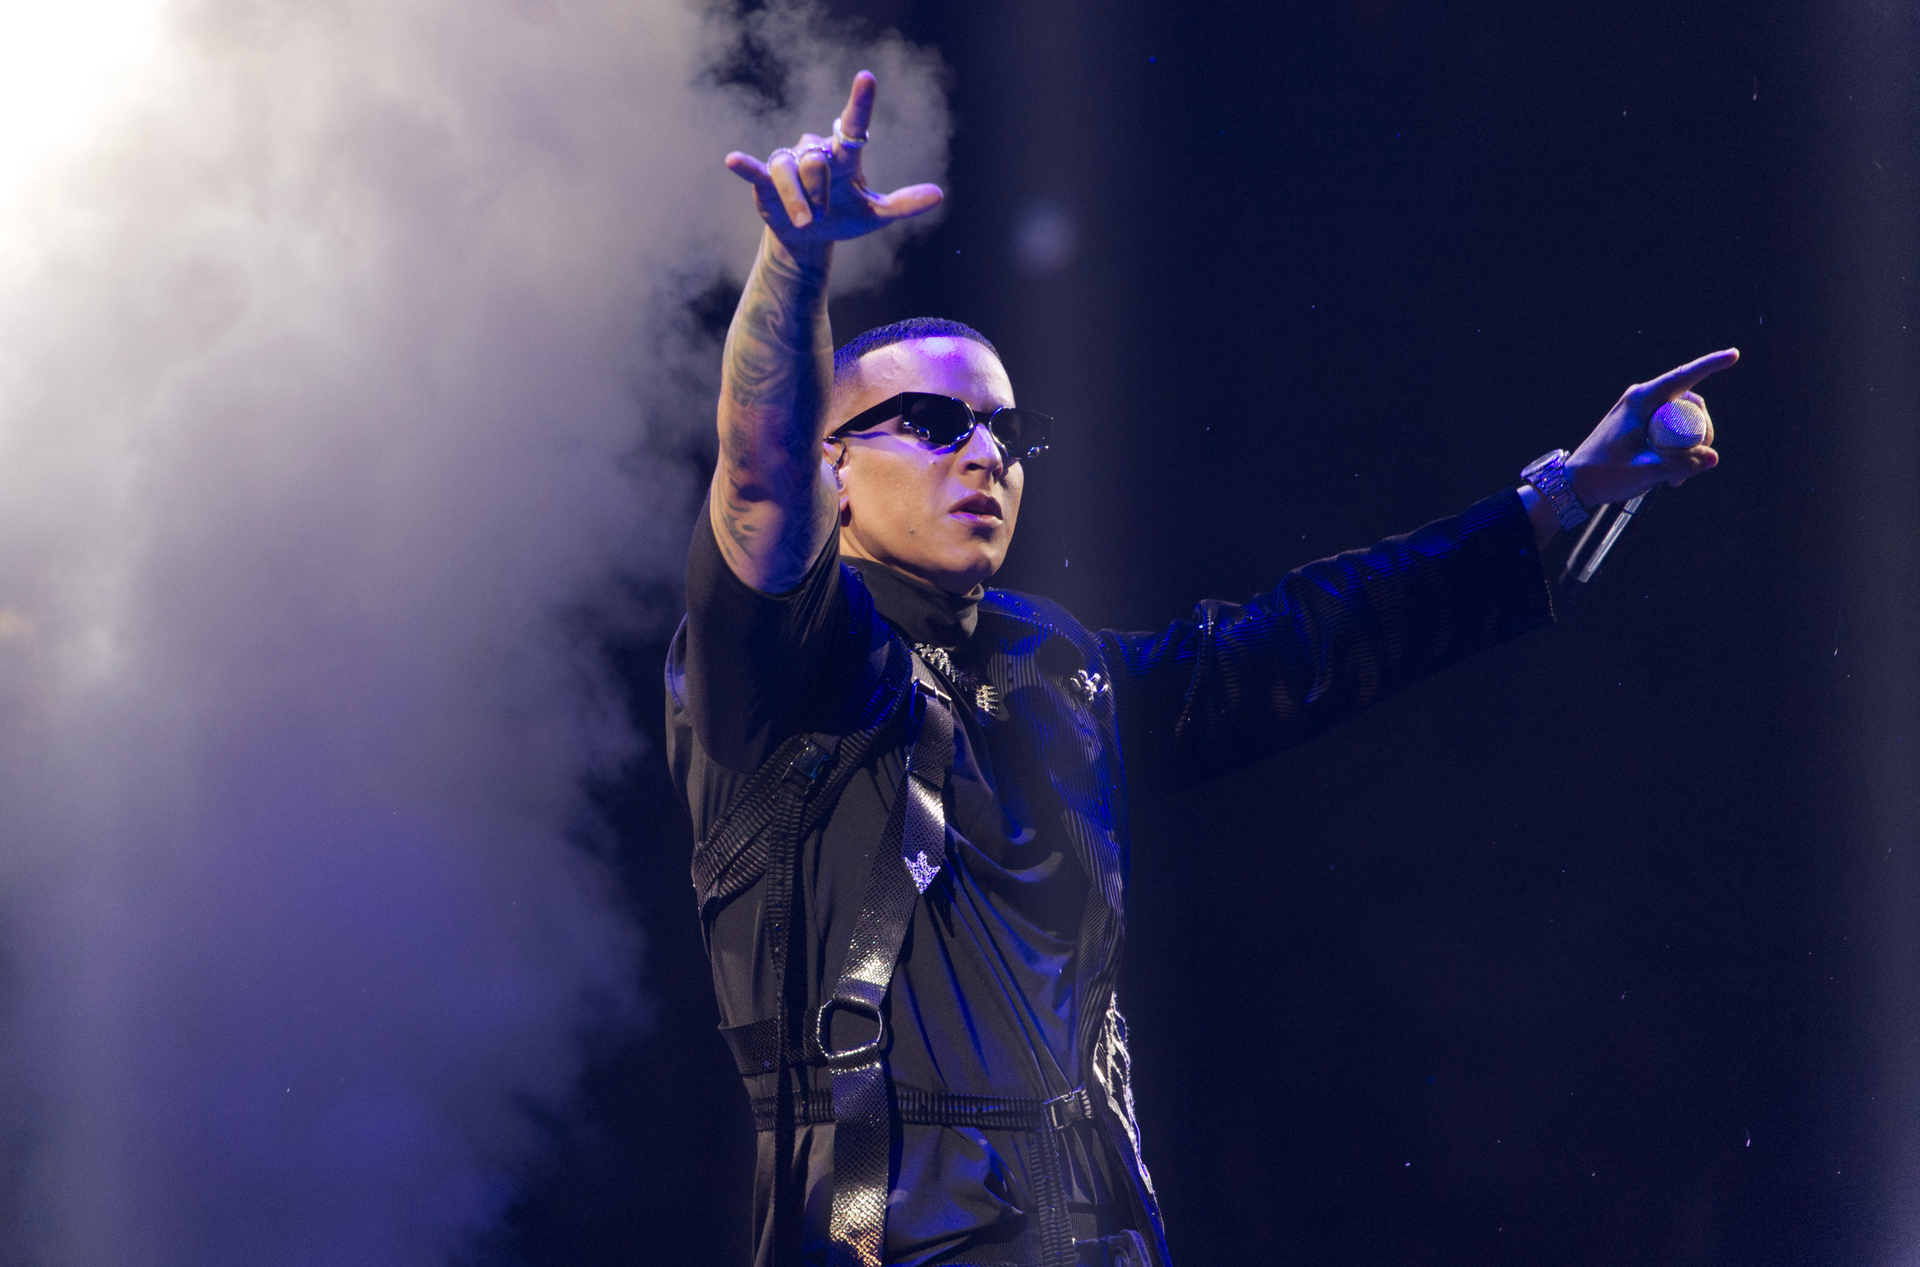 Fue un pionero y aún le queda 'gasolina', pero ha decidido retirarse. Daddy Yankee se despide este fin de semana con una serie de conciertos en Puerto Rico, donde forjó su carrera de más de 30 años como el 'Rey del Reguetón' e influyó en muchos artistas. EFE